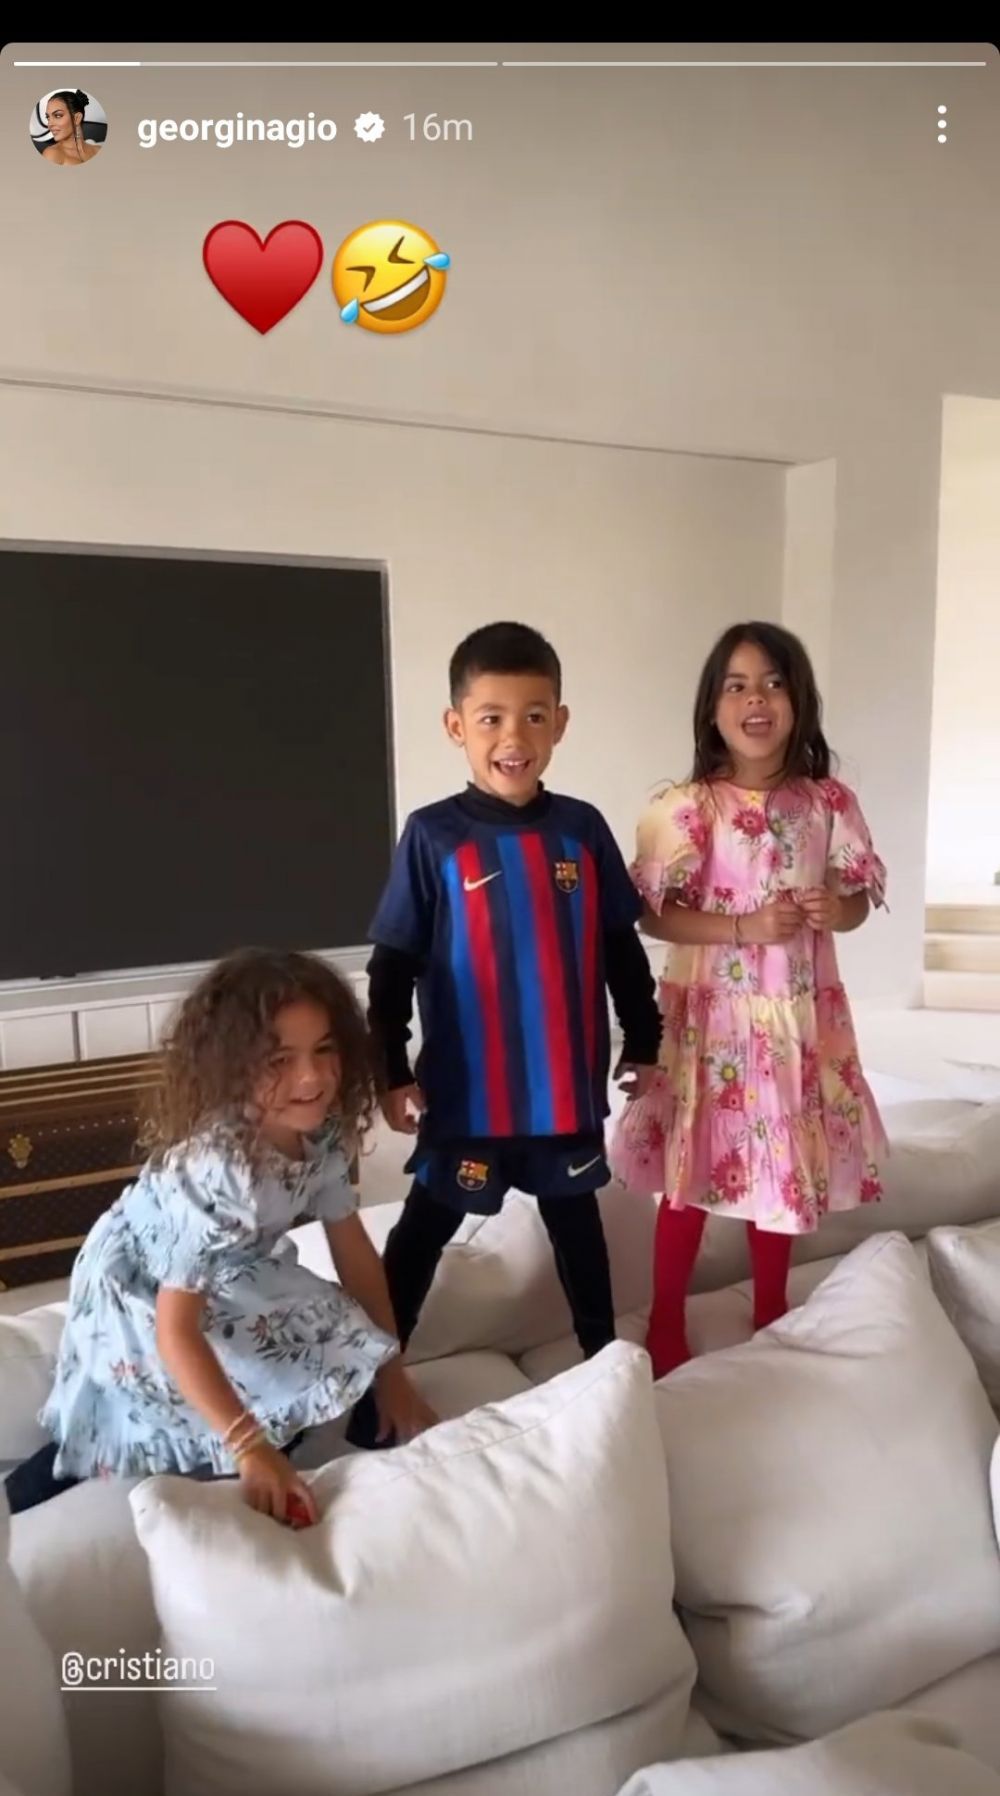 "Copiii nu mint niciodată!". Fiul lui Cristiano Ronaldo, filmat îmbrăcat în echipamentul Barcelonei: imaginile s-au viralizat instant_2